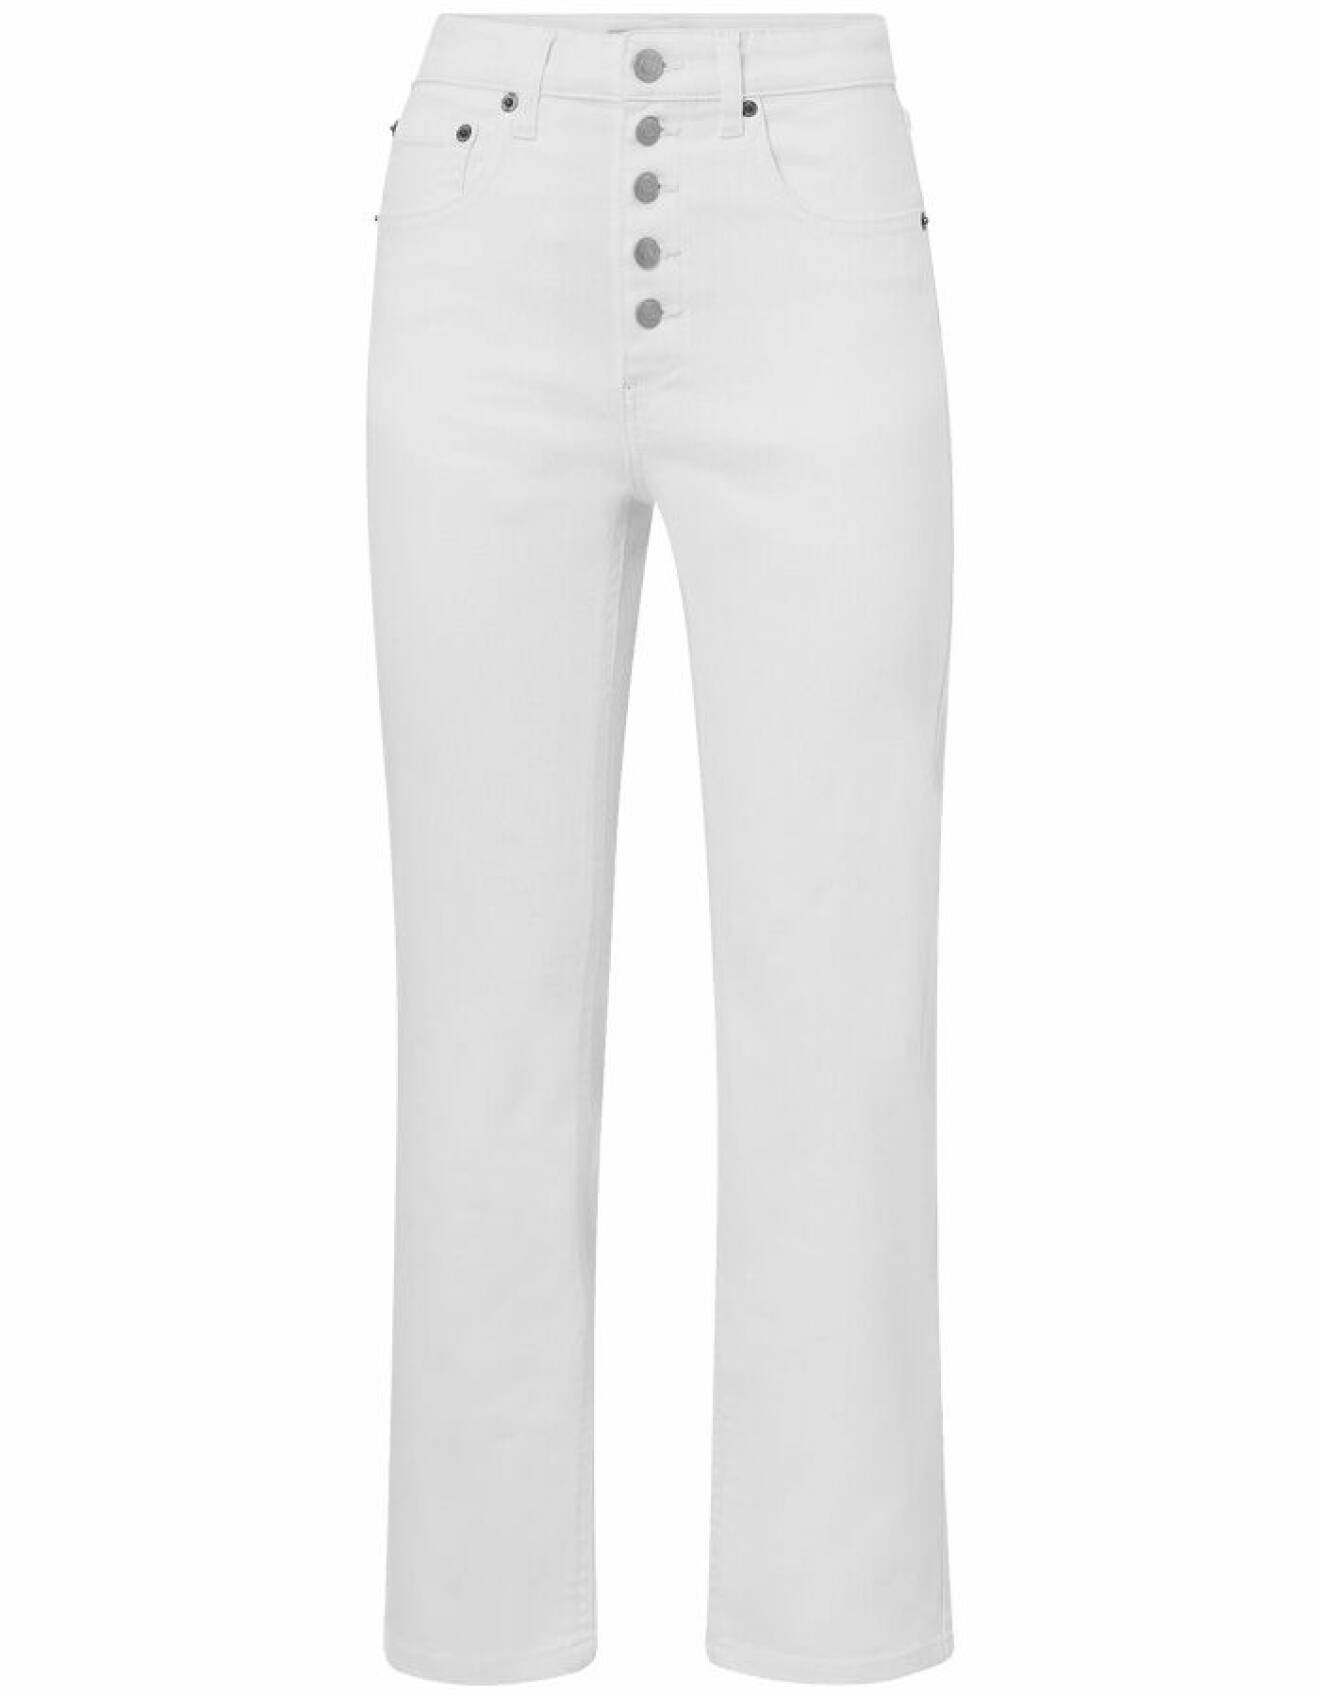 vita jeans för dam från ellos